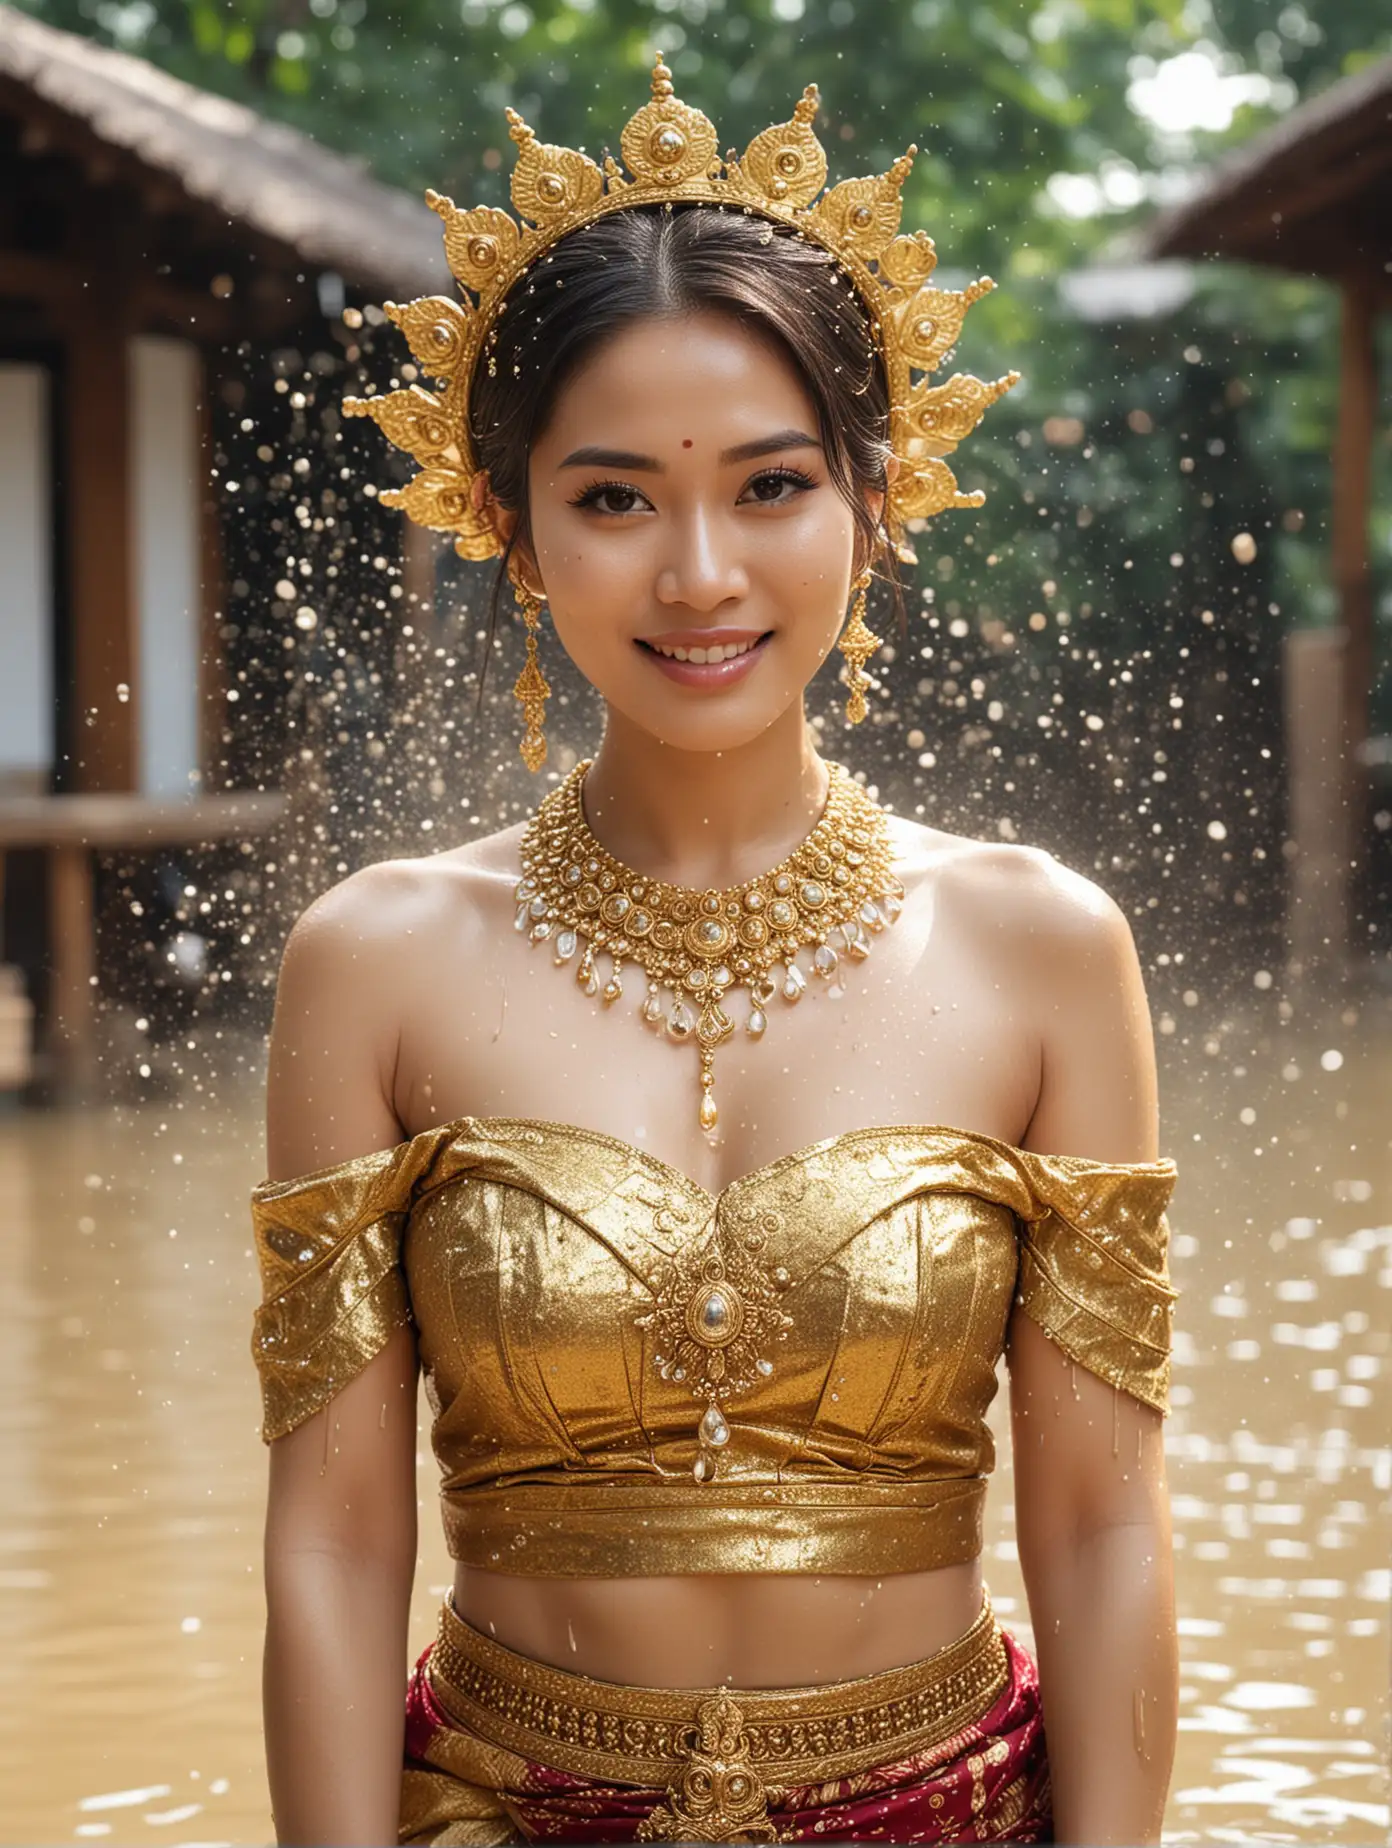 Thai Woman Celebrating Songkran Festival with Splashing Water Action